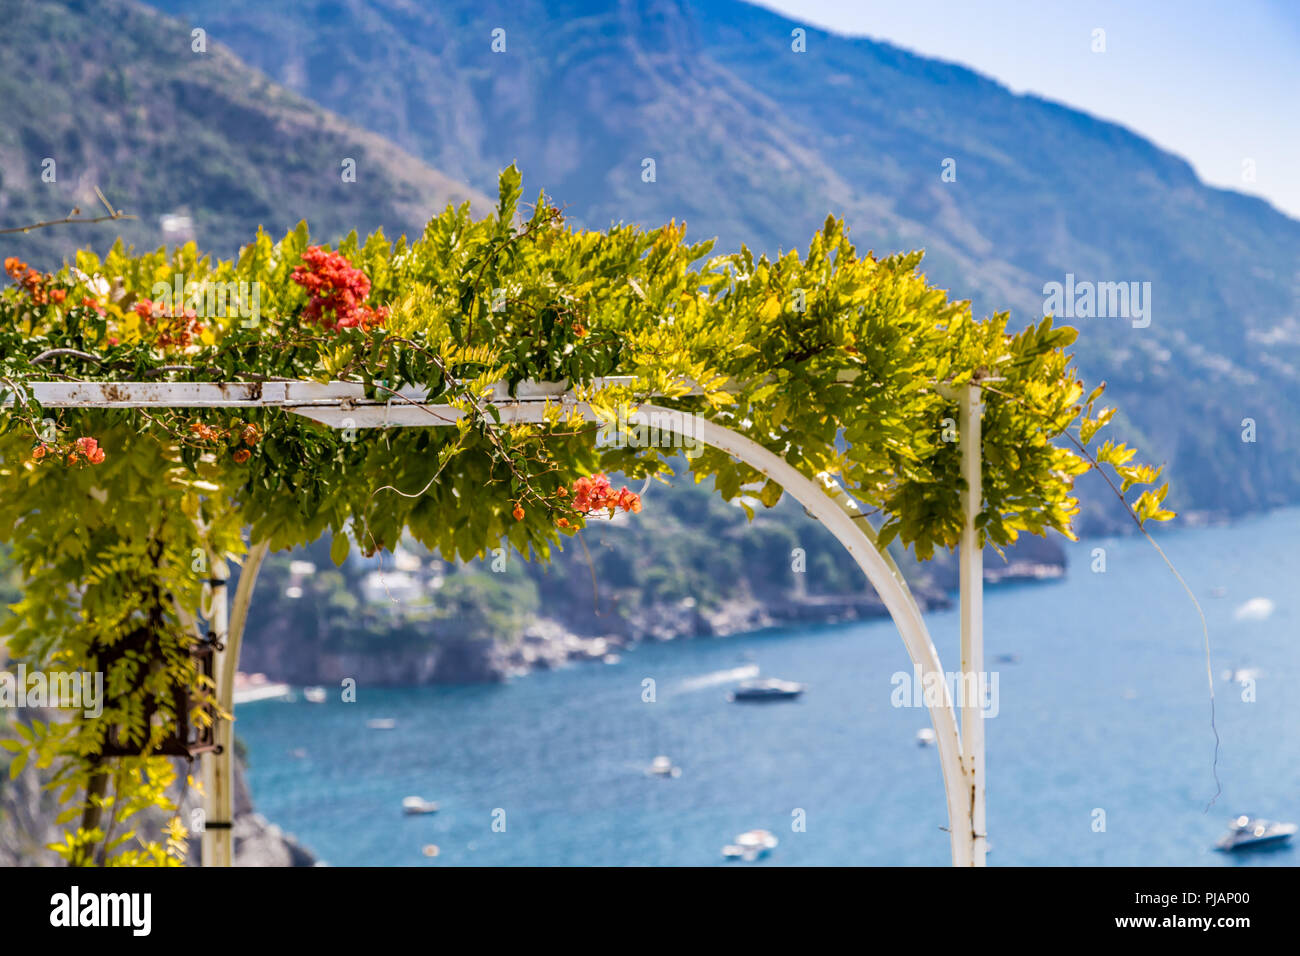 Red bignonia campsis fiore sul ferro da stiro arco sulla costiera amalfitana Foto Stock